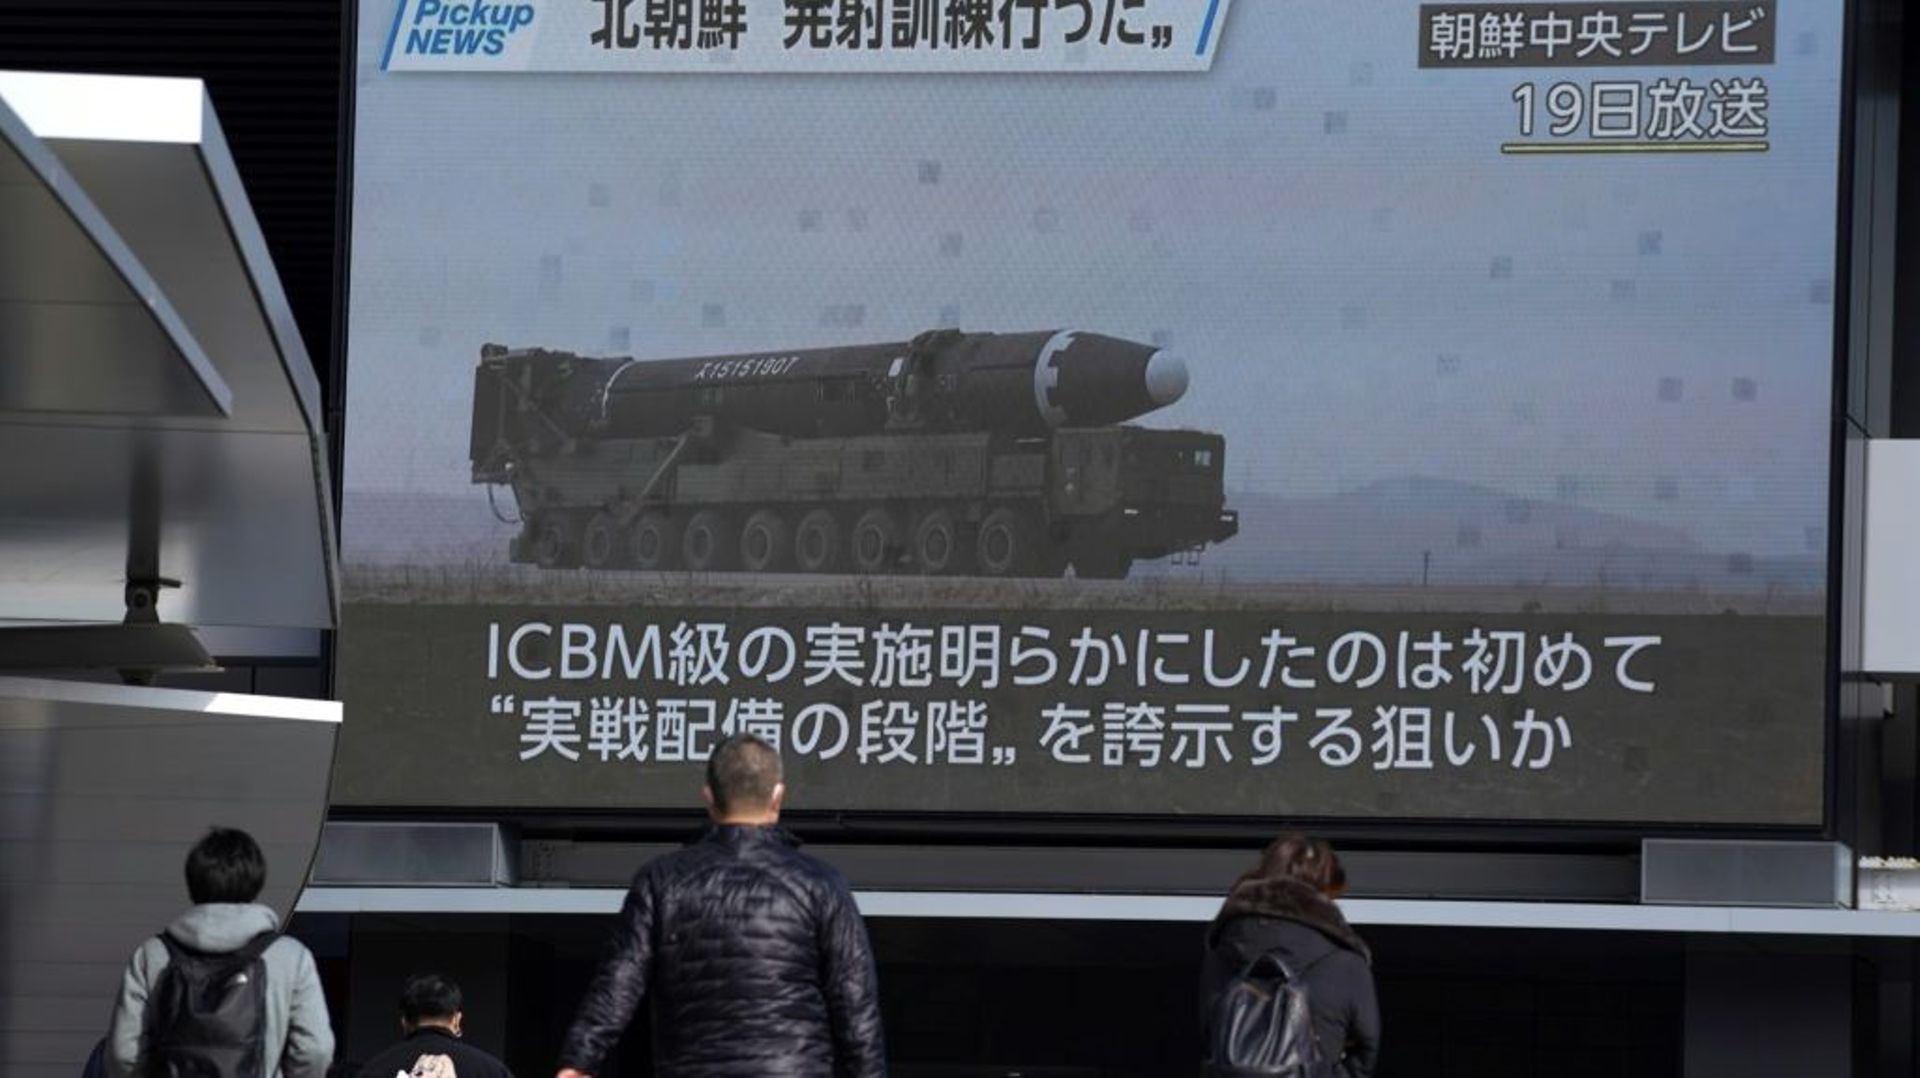 Des piétons passent devant un écran montrant les images d’un lancement de missiles de la Corée du Nord diffusées par la télévision officielle nord-coréenne KCTV, à Tokyo, le 20 février 2023